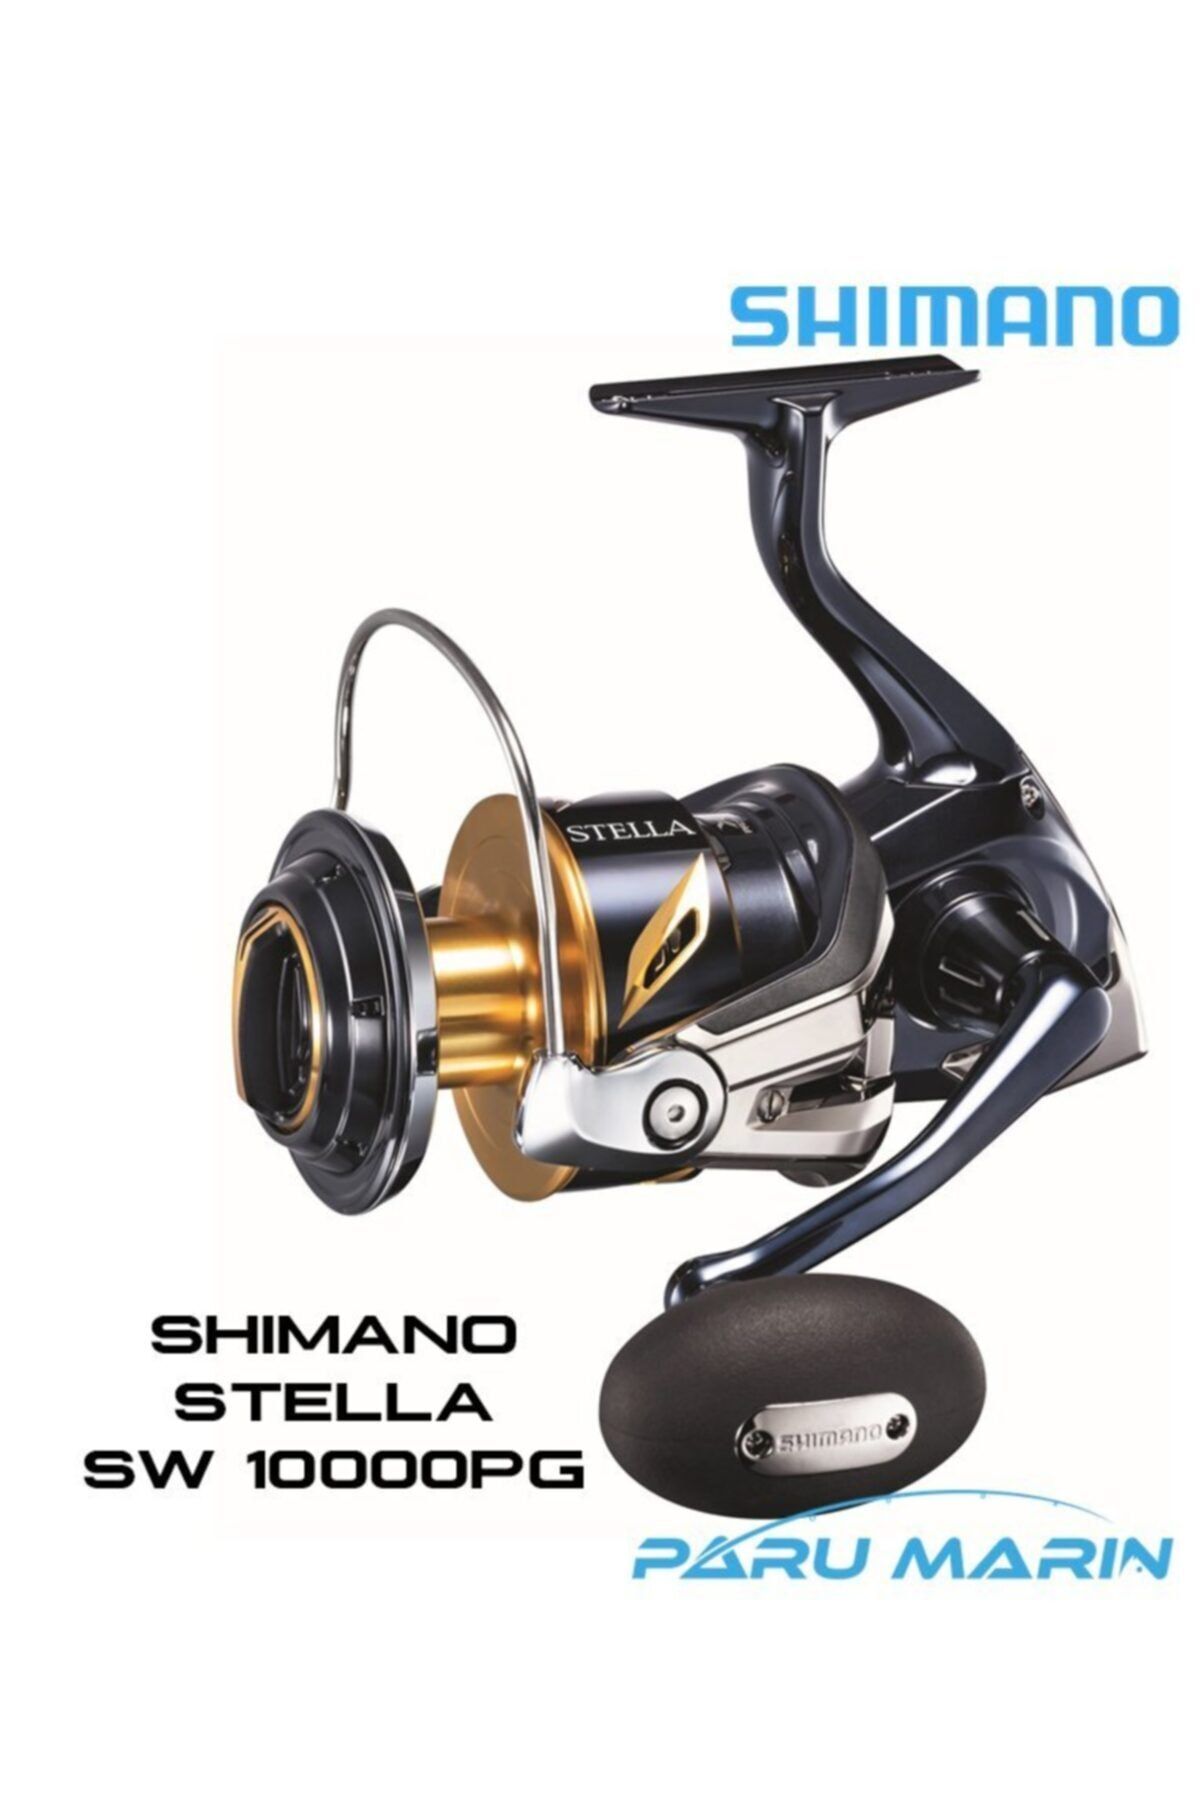 shimano Stella Sw 10000 Pg Fiyatı, Yorumları - Trendyol